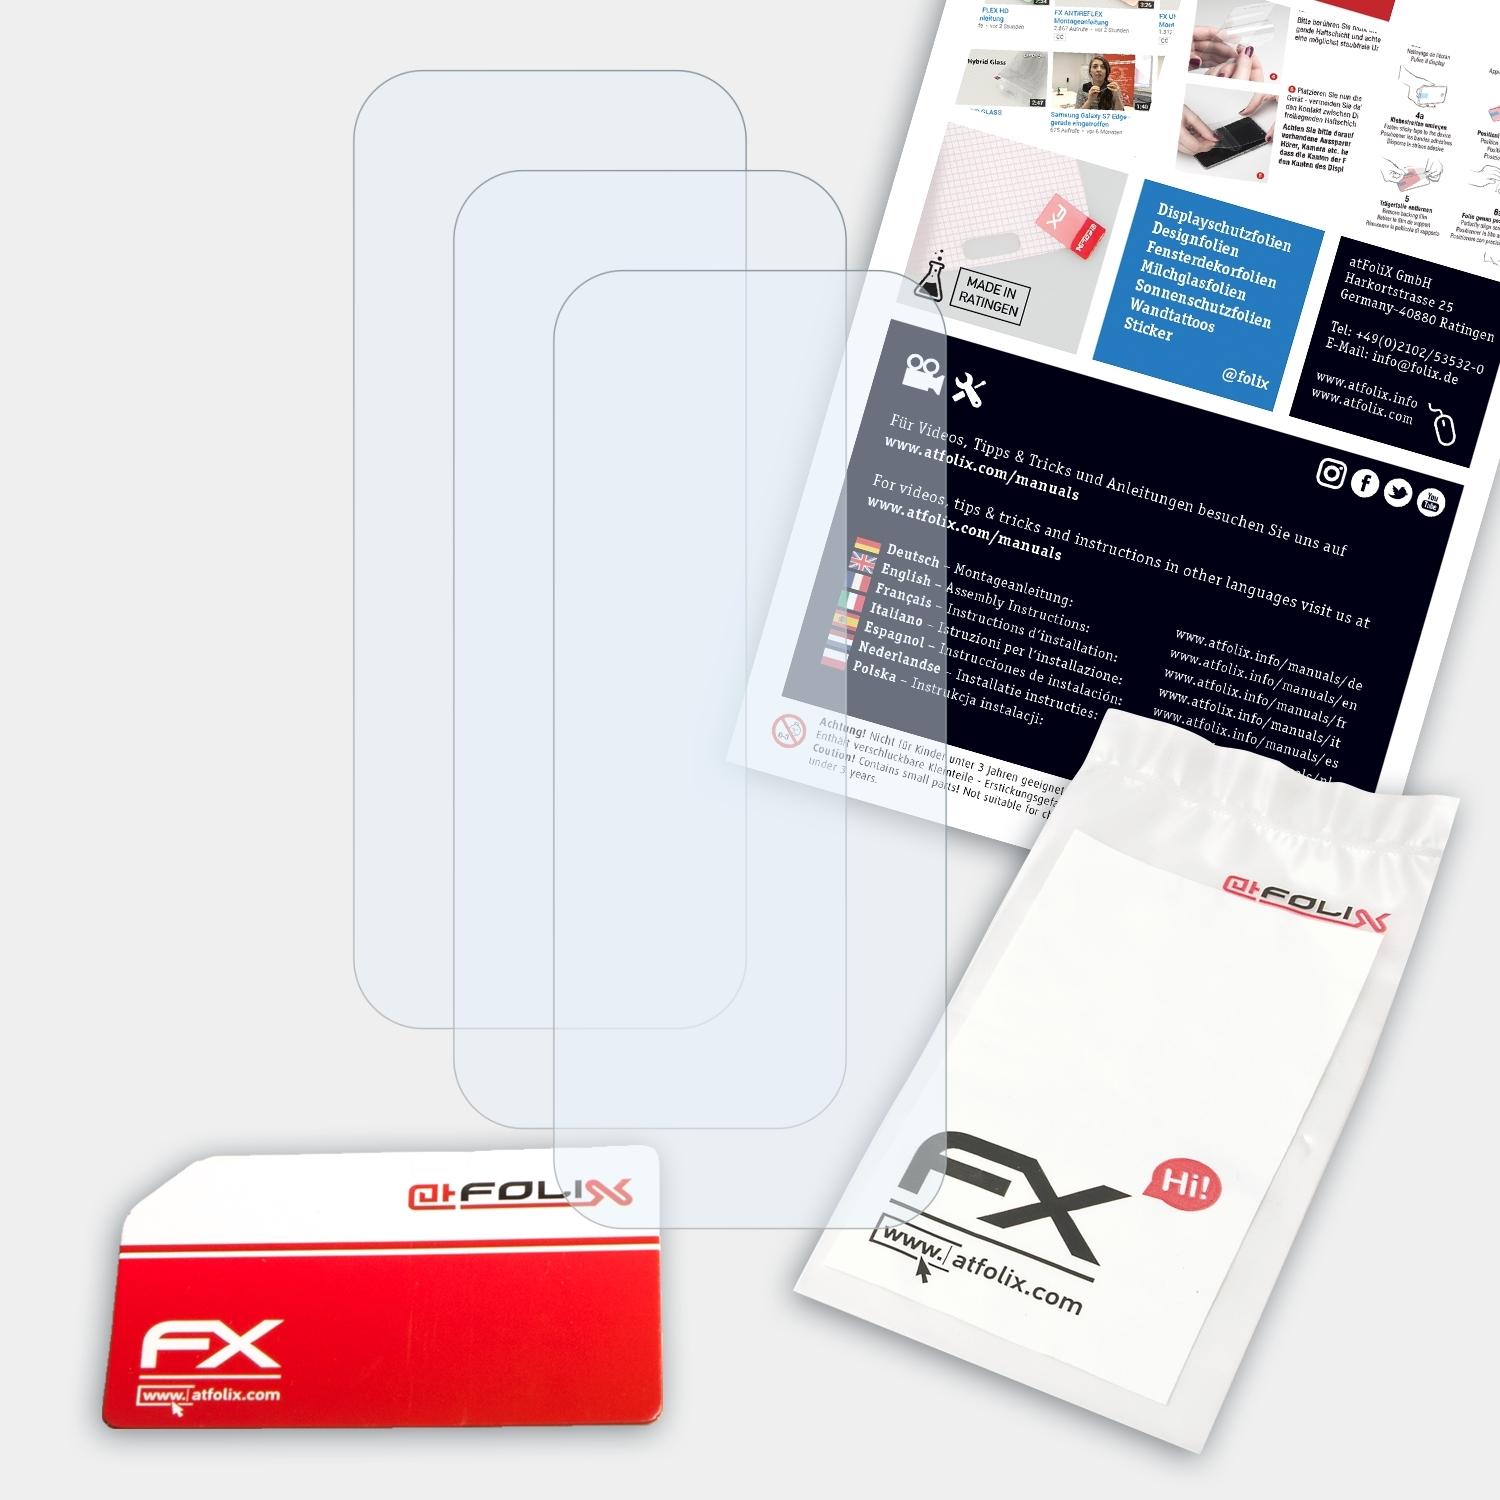 ATFOLIX 3x Displayschutz(für (2021)) FX-Clear Lens Vivo Y12s